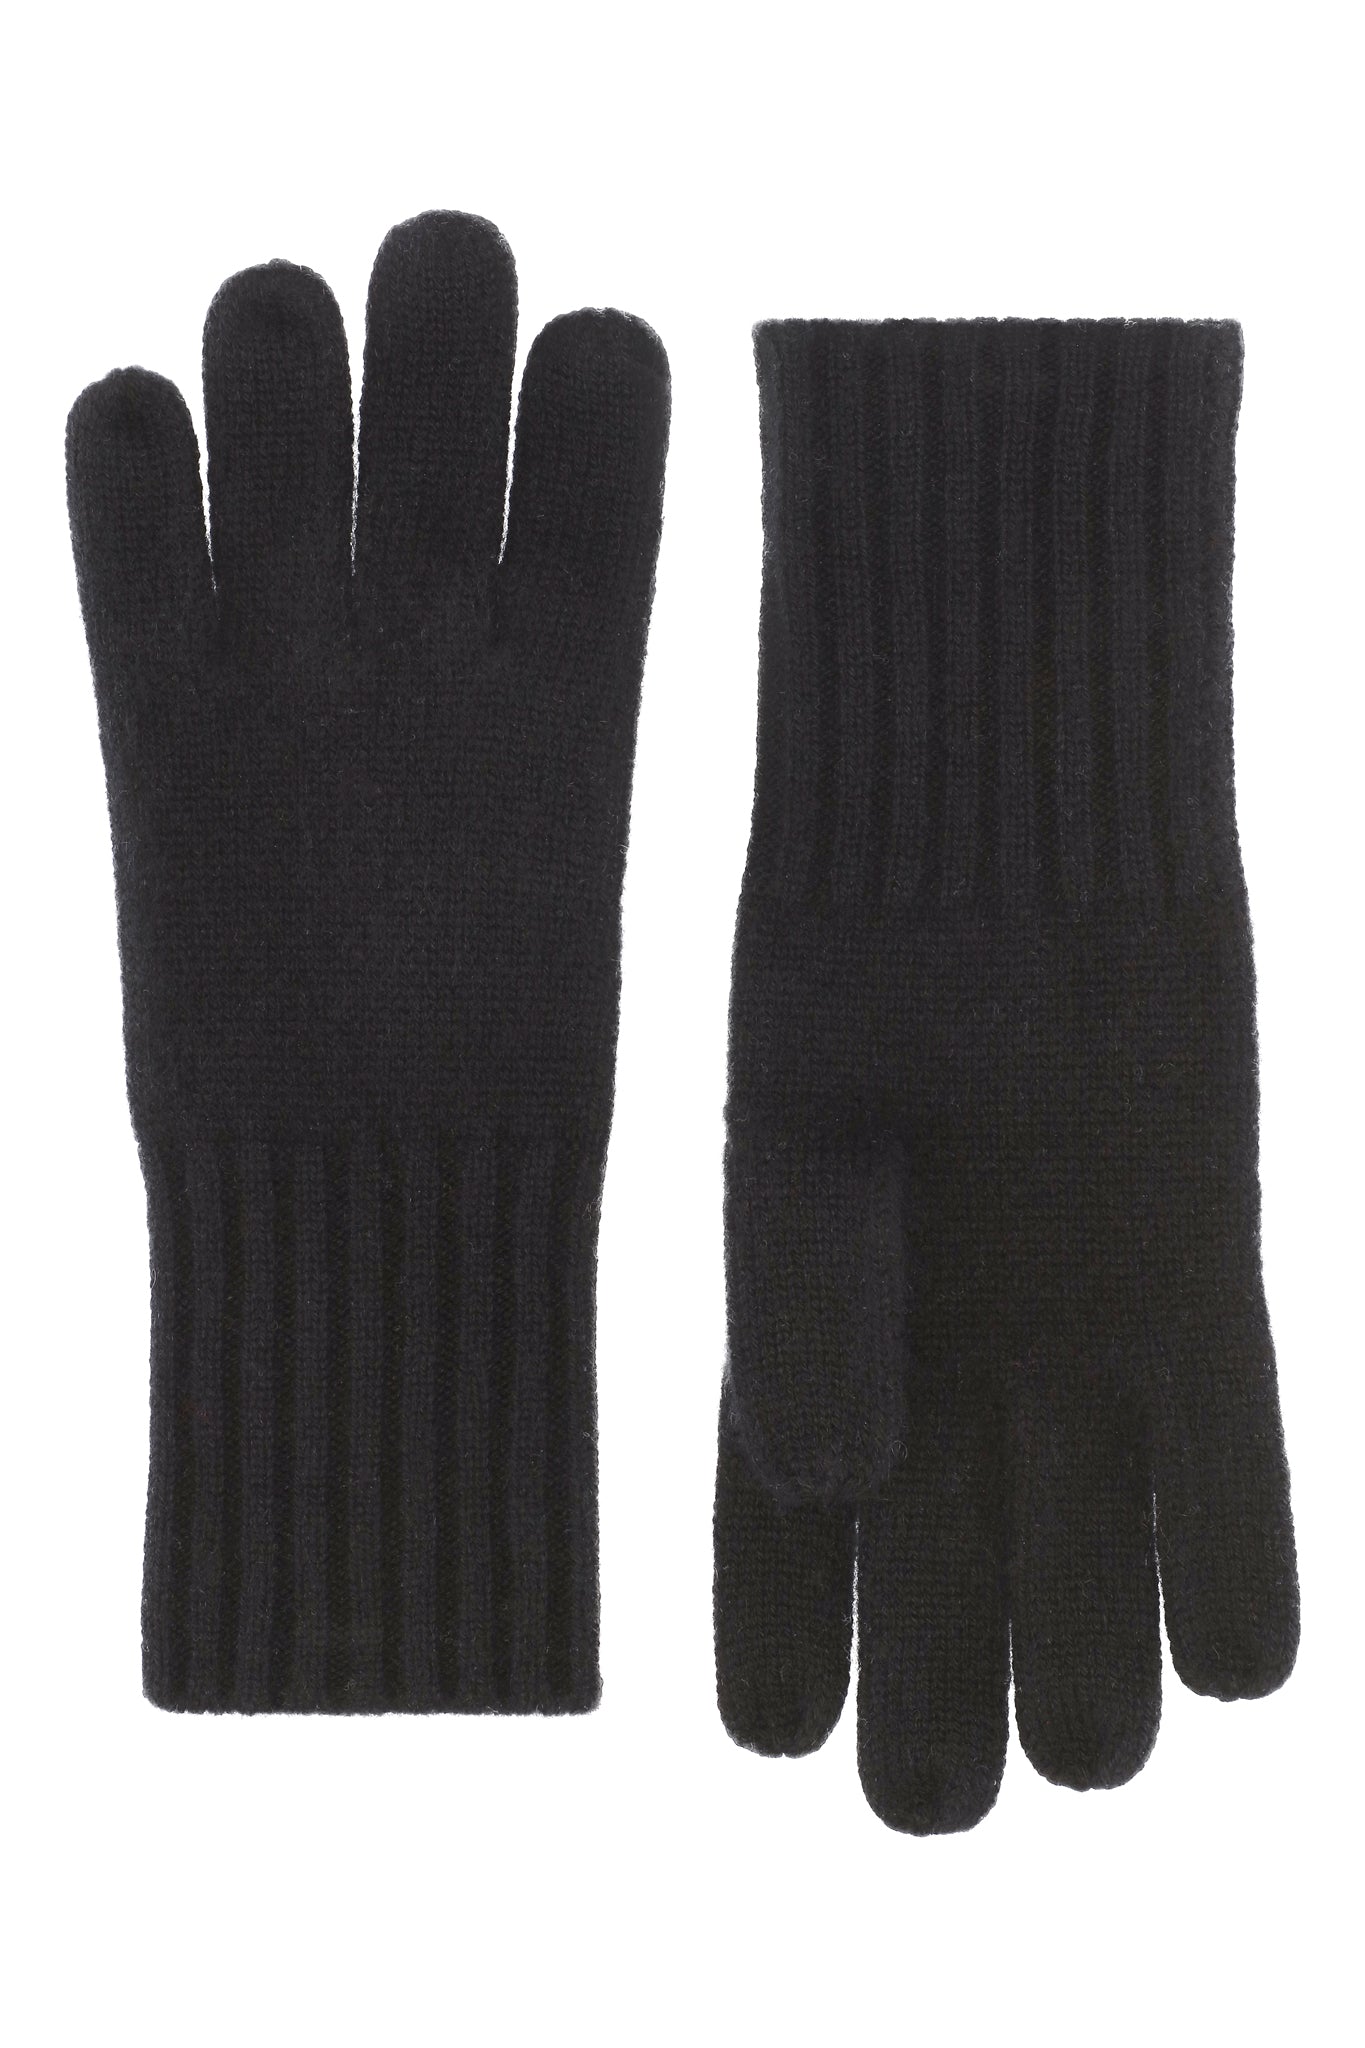 Robin - Handsker i strikket cashmere - Sorte